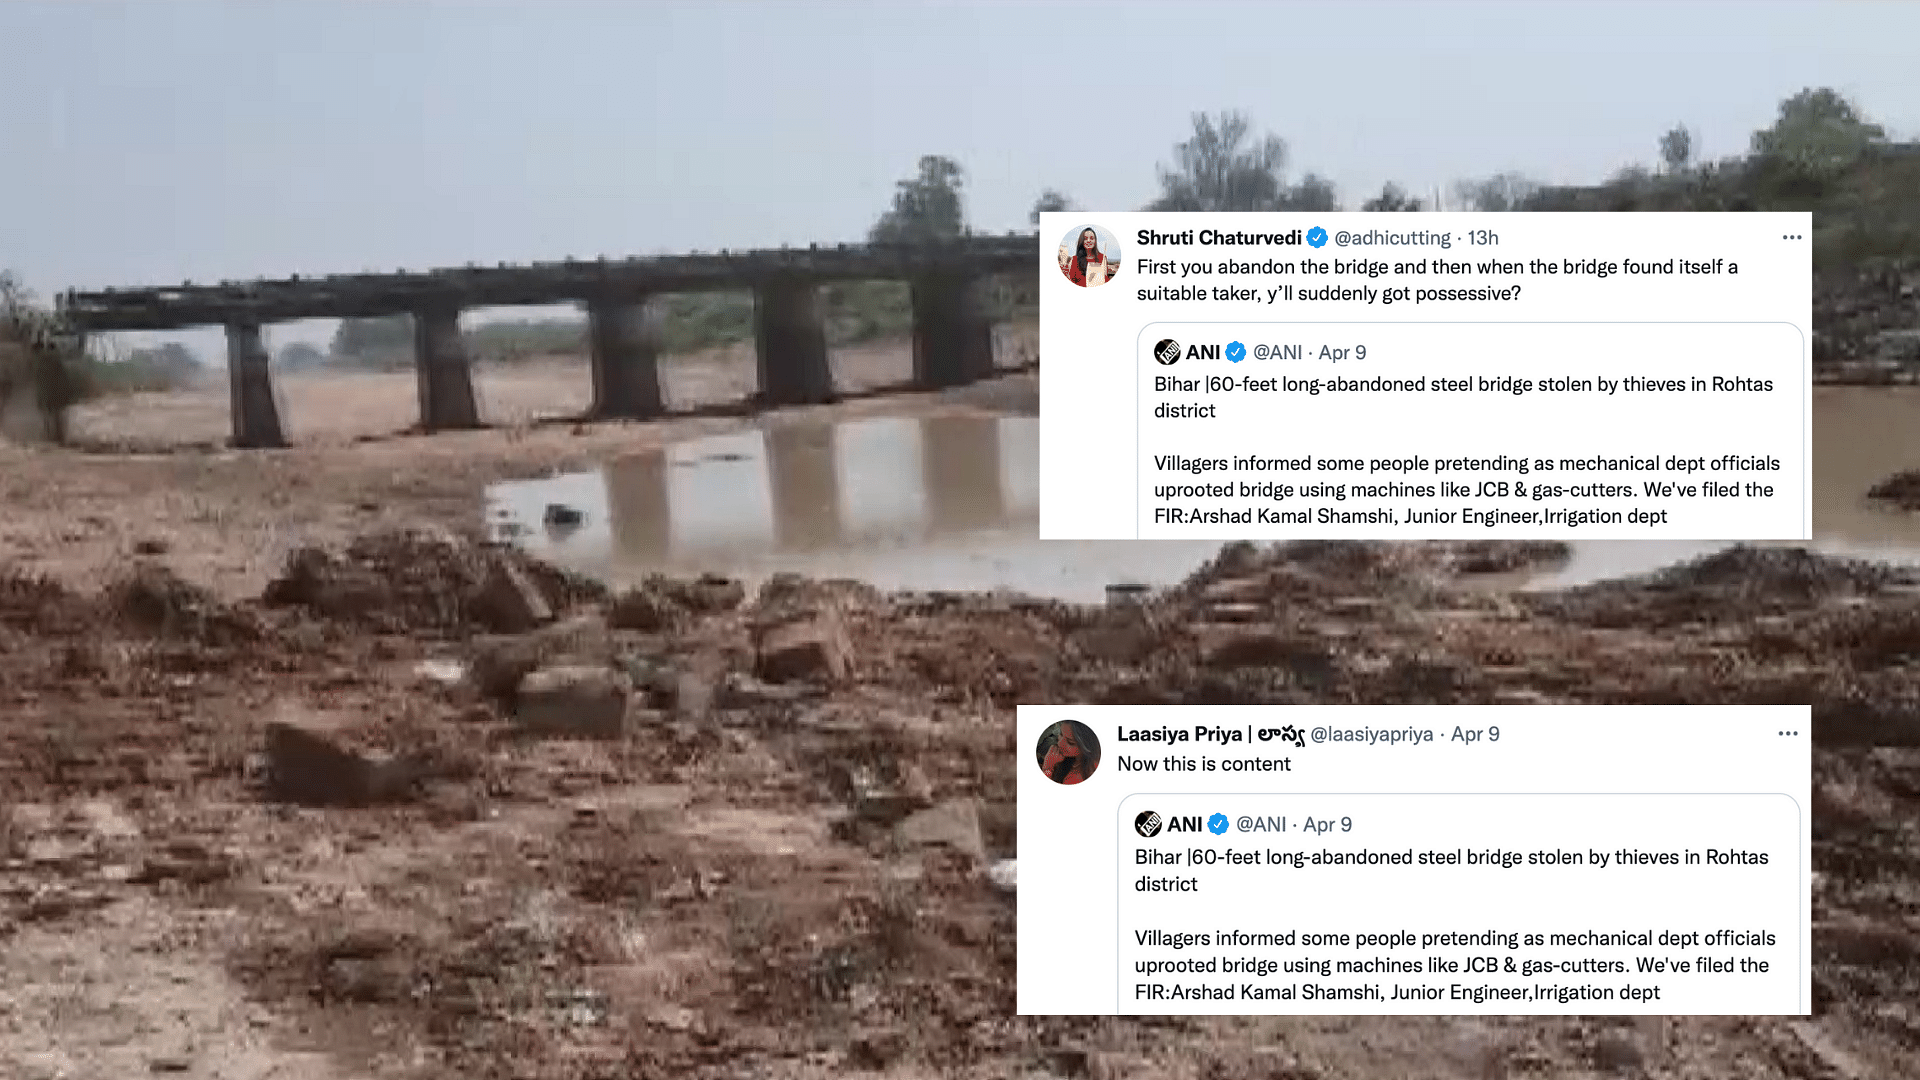 <div class="paragraphs"><p>Thieves steal 60 ft bridge in Bihar.</p></div>